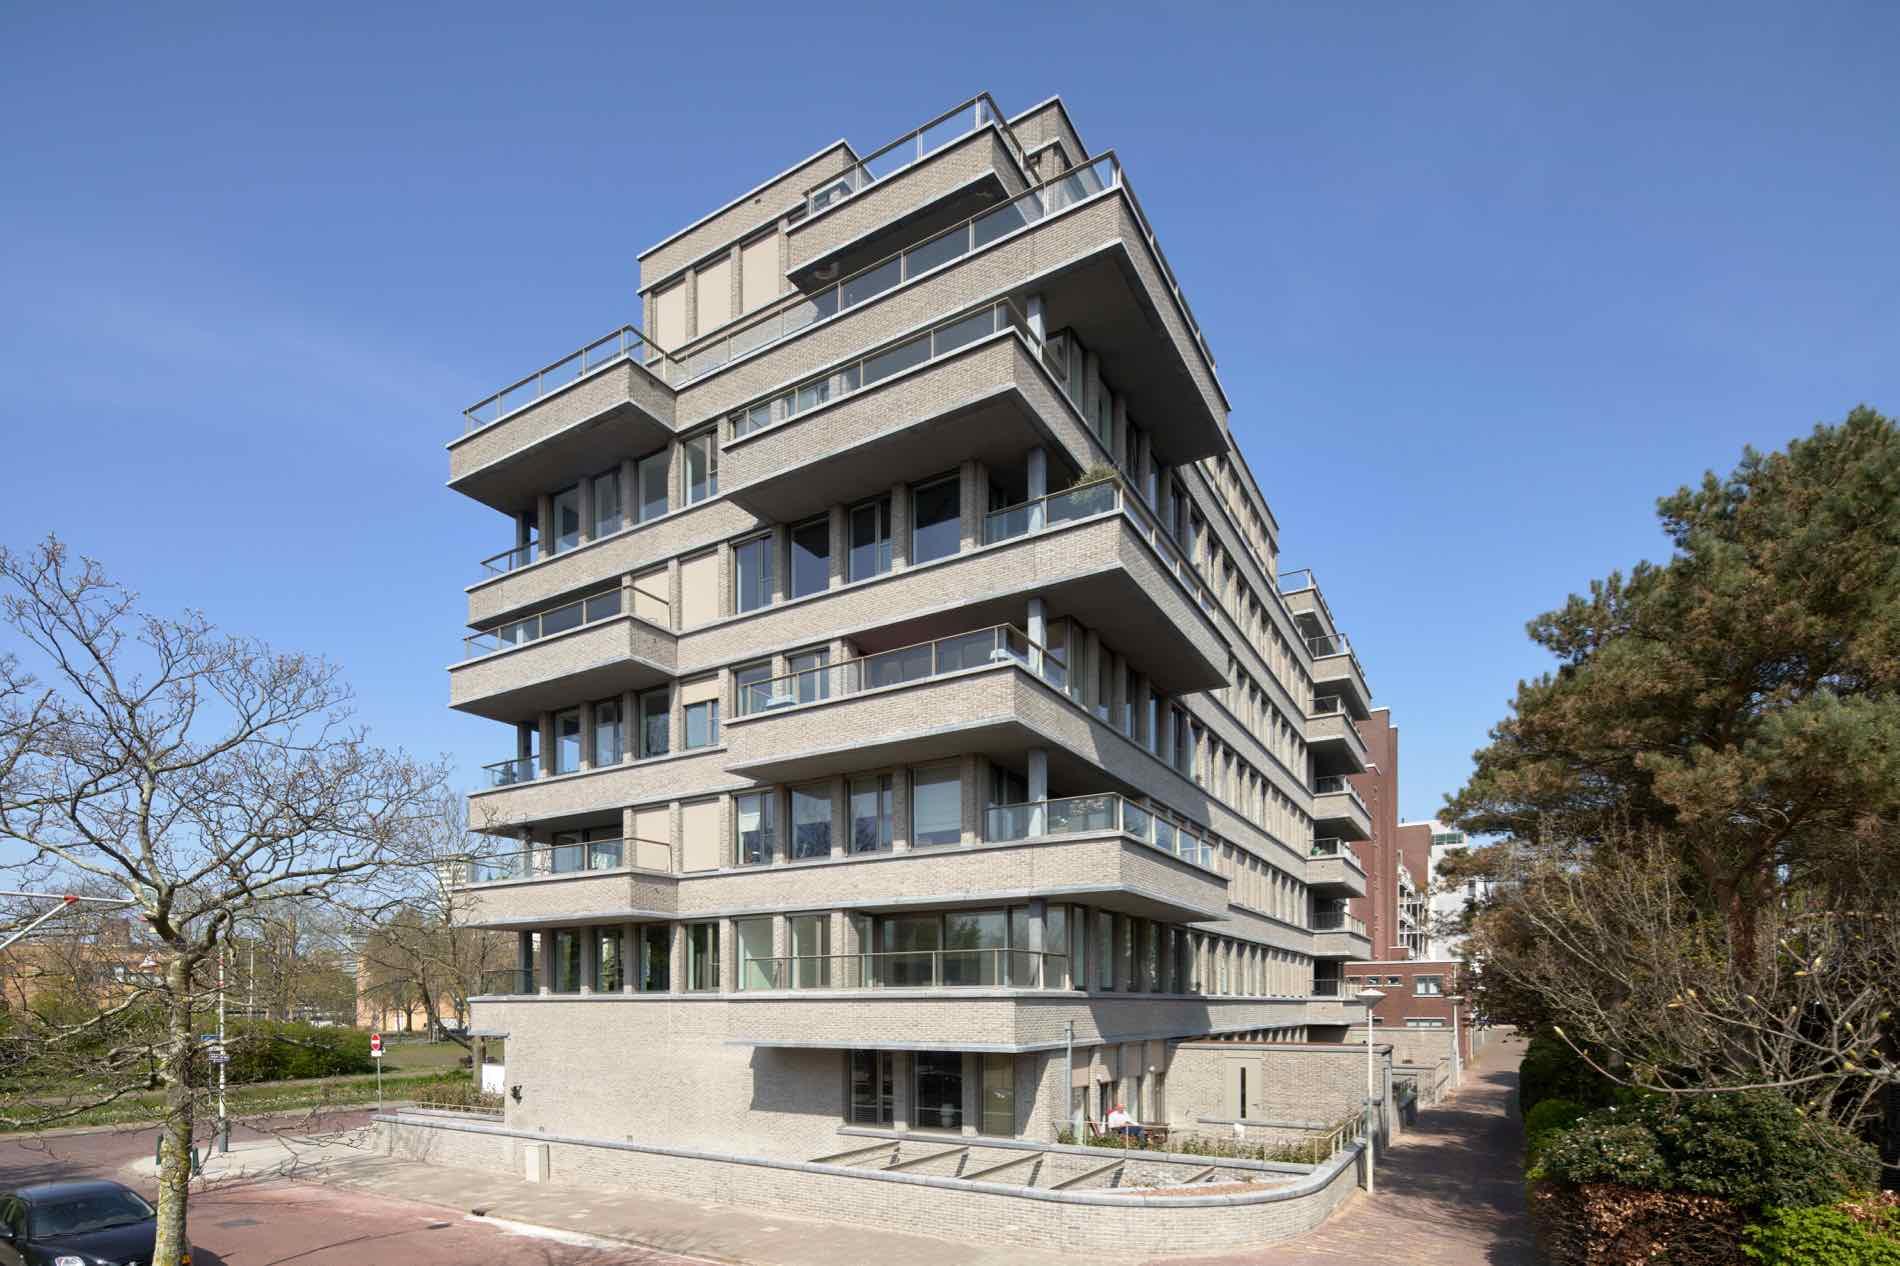 Appartementen Stadhoudersplantsoen 2, Den Haag - Geurst & Schulze Architecten